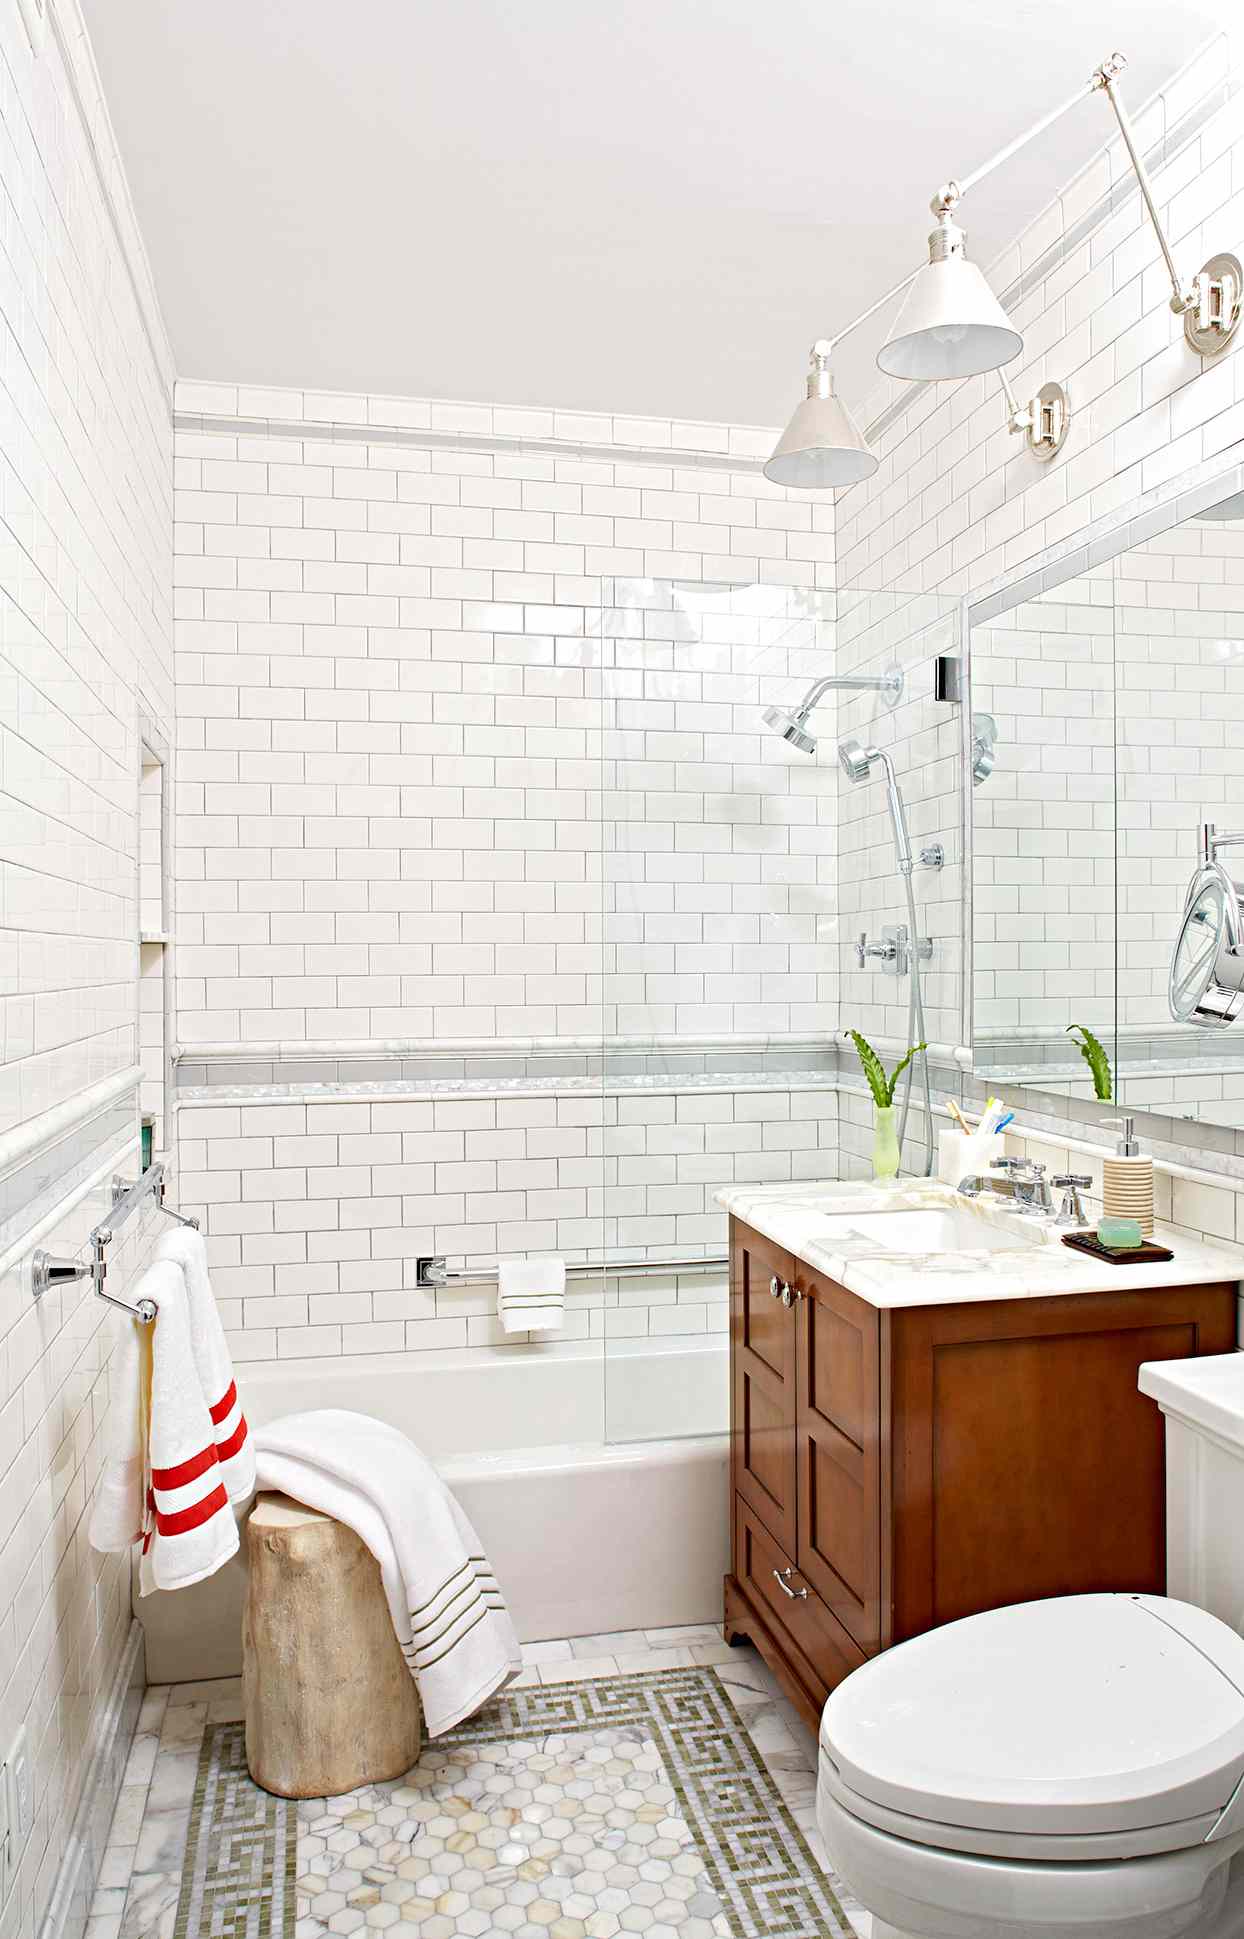 Tile A Shower Enclosure Or Tub Surround, Bathtub Sizes Shower Panels